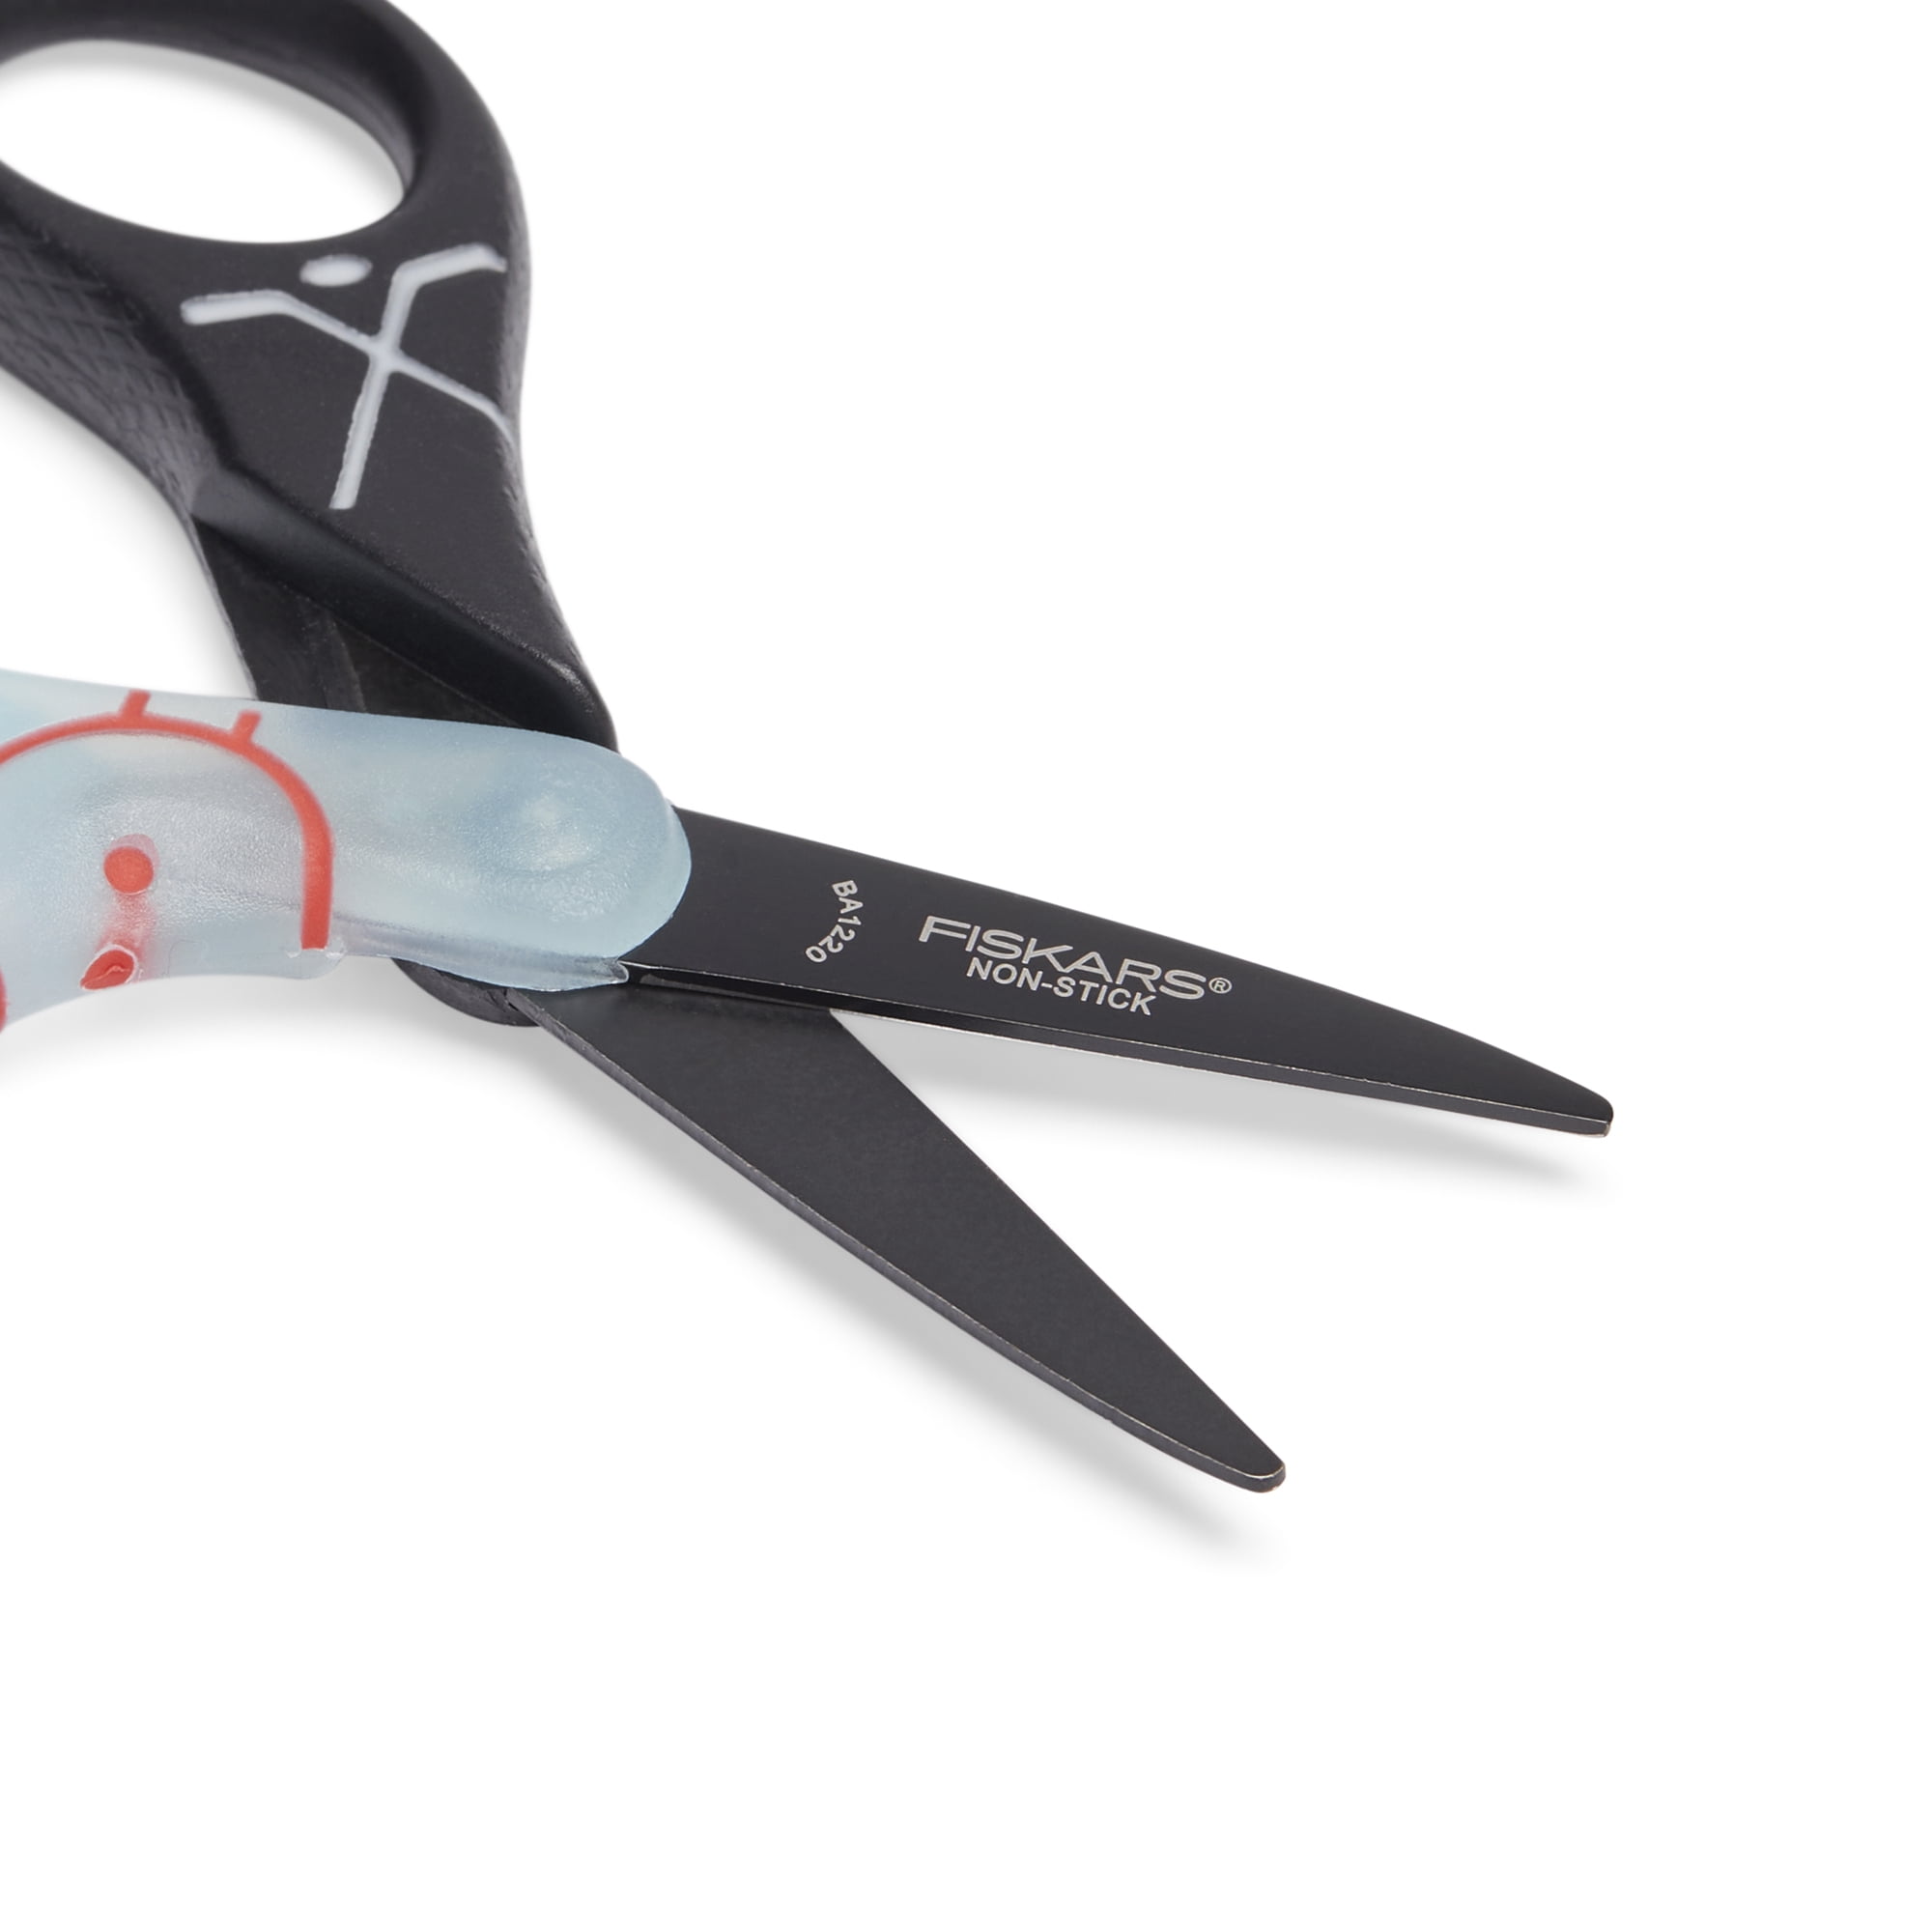 Fiskars Non-Stick Scissors, Small — Colophon Book Arts Supply